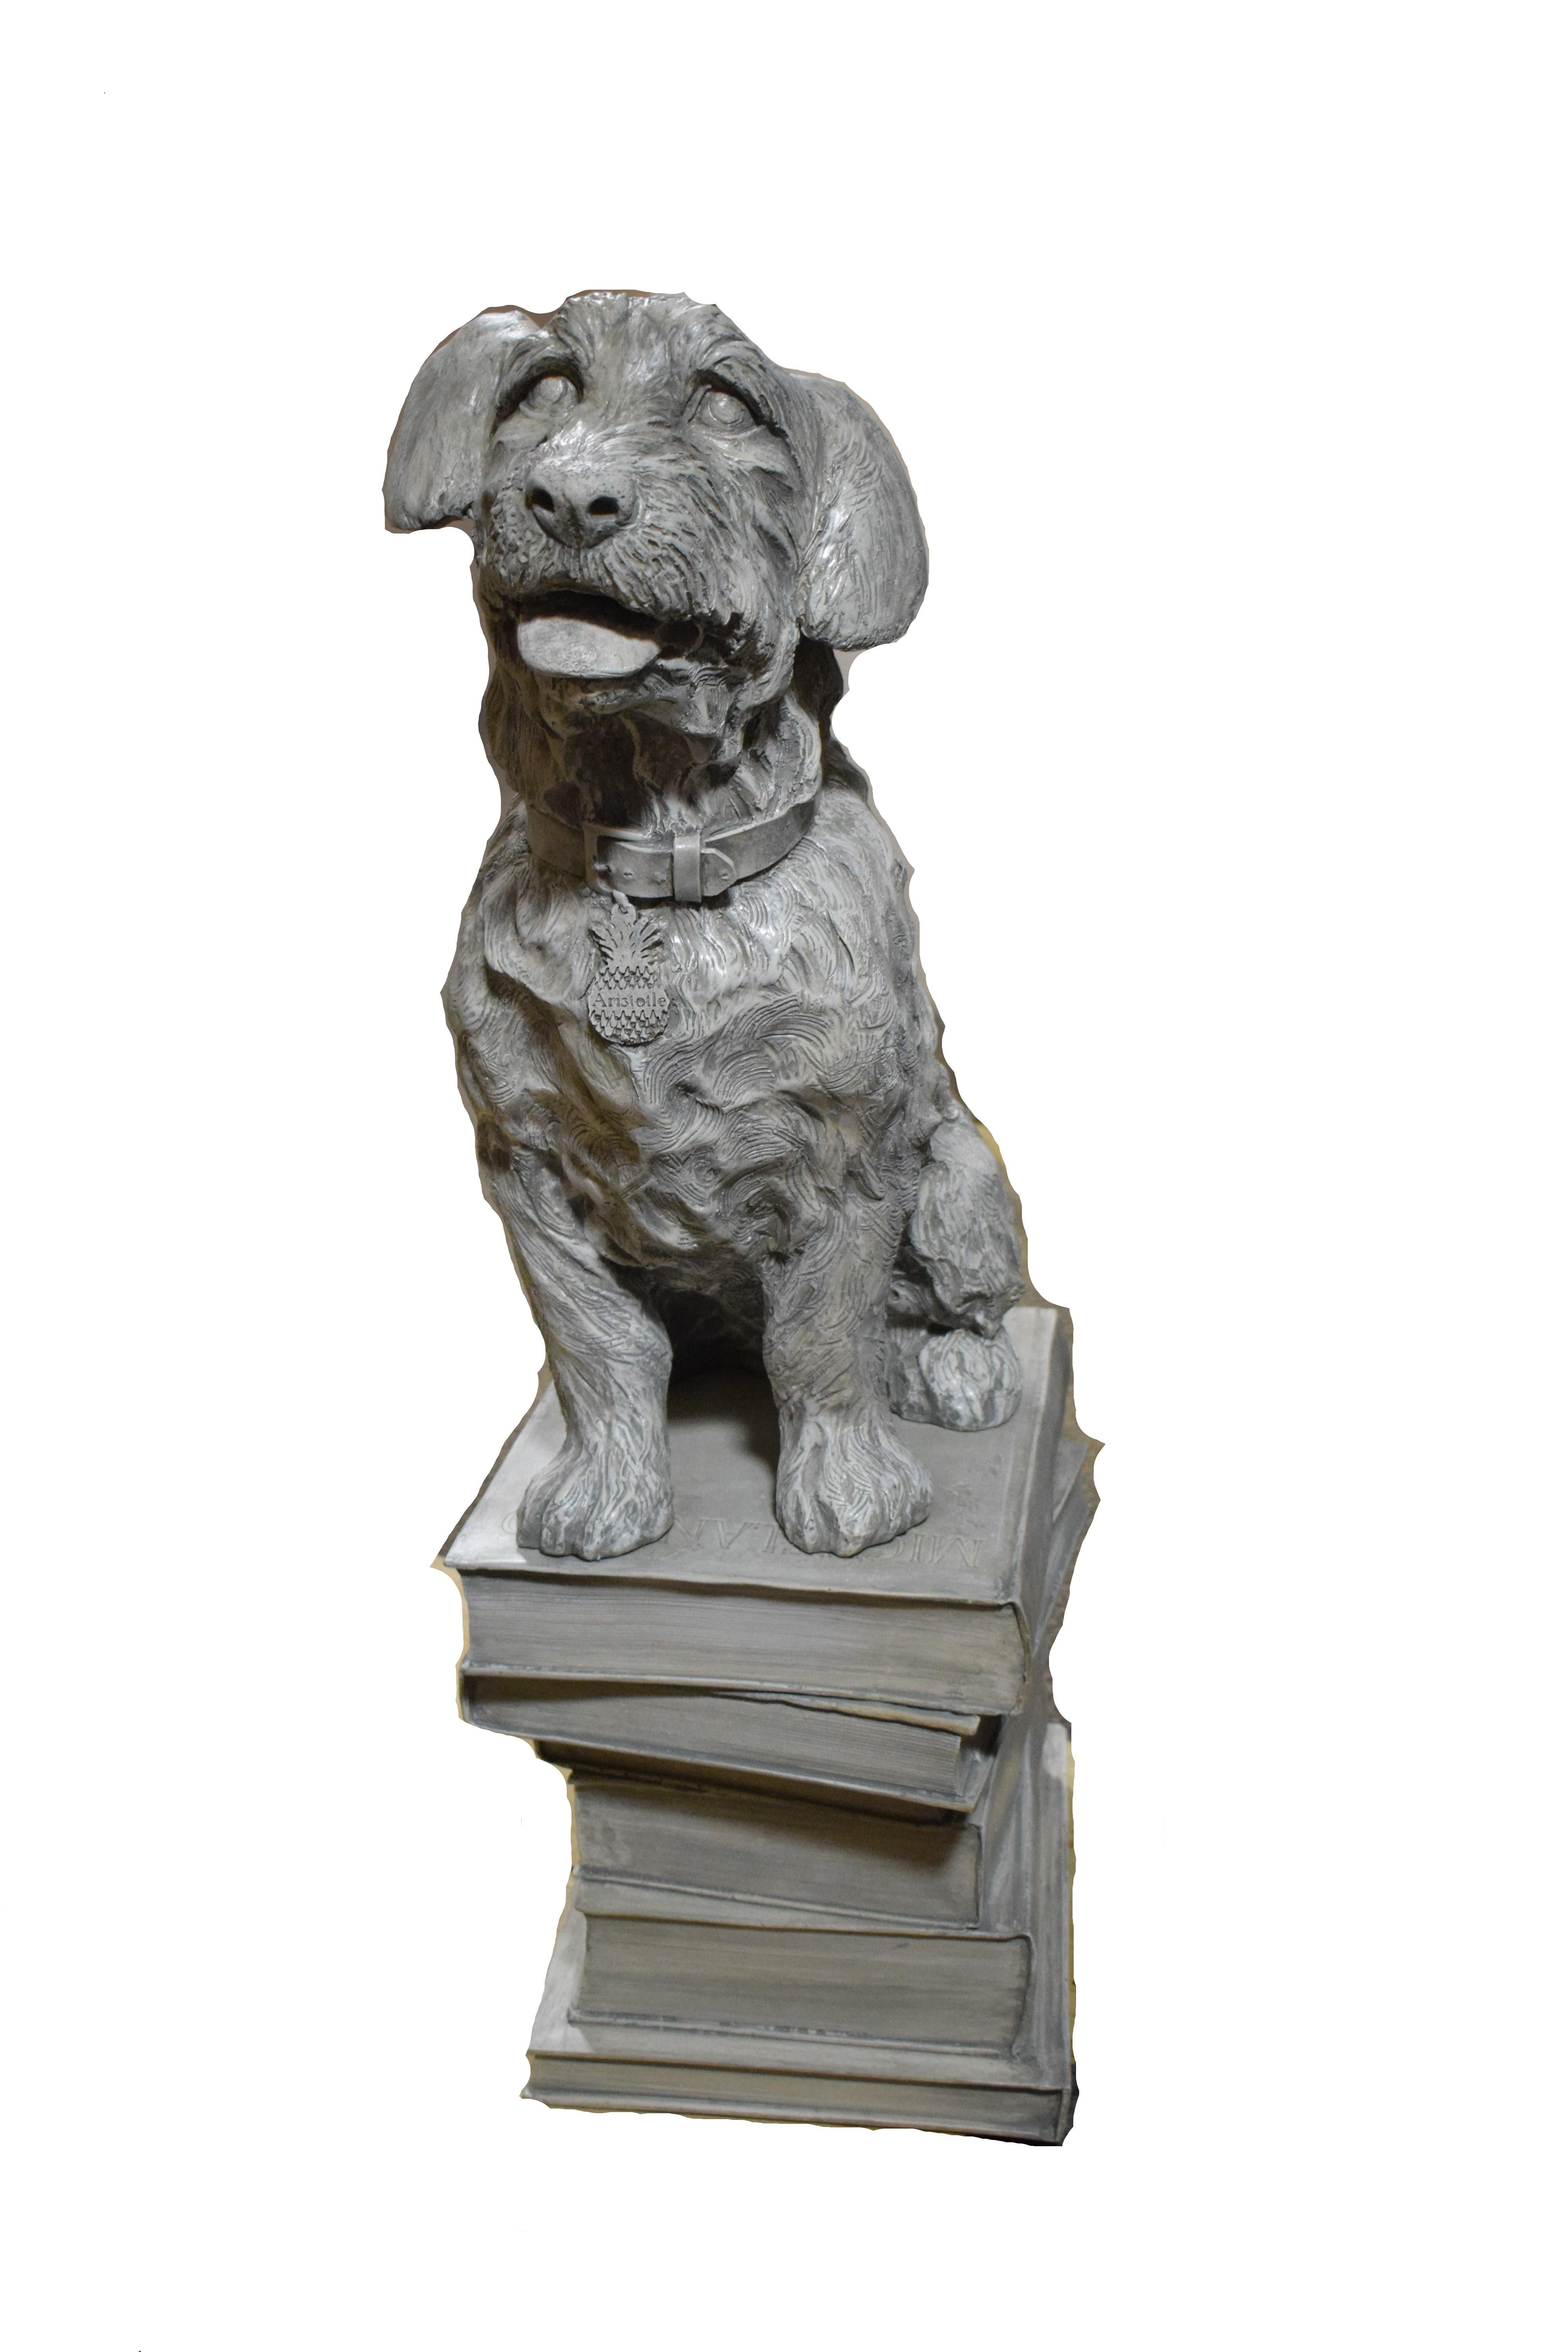 sculpture of a dog